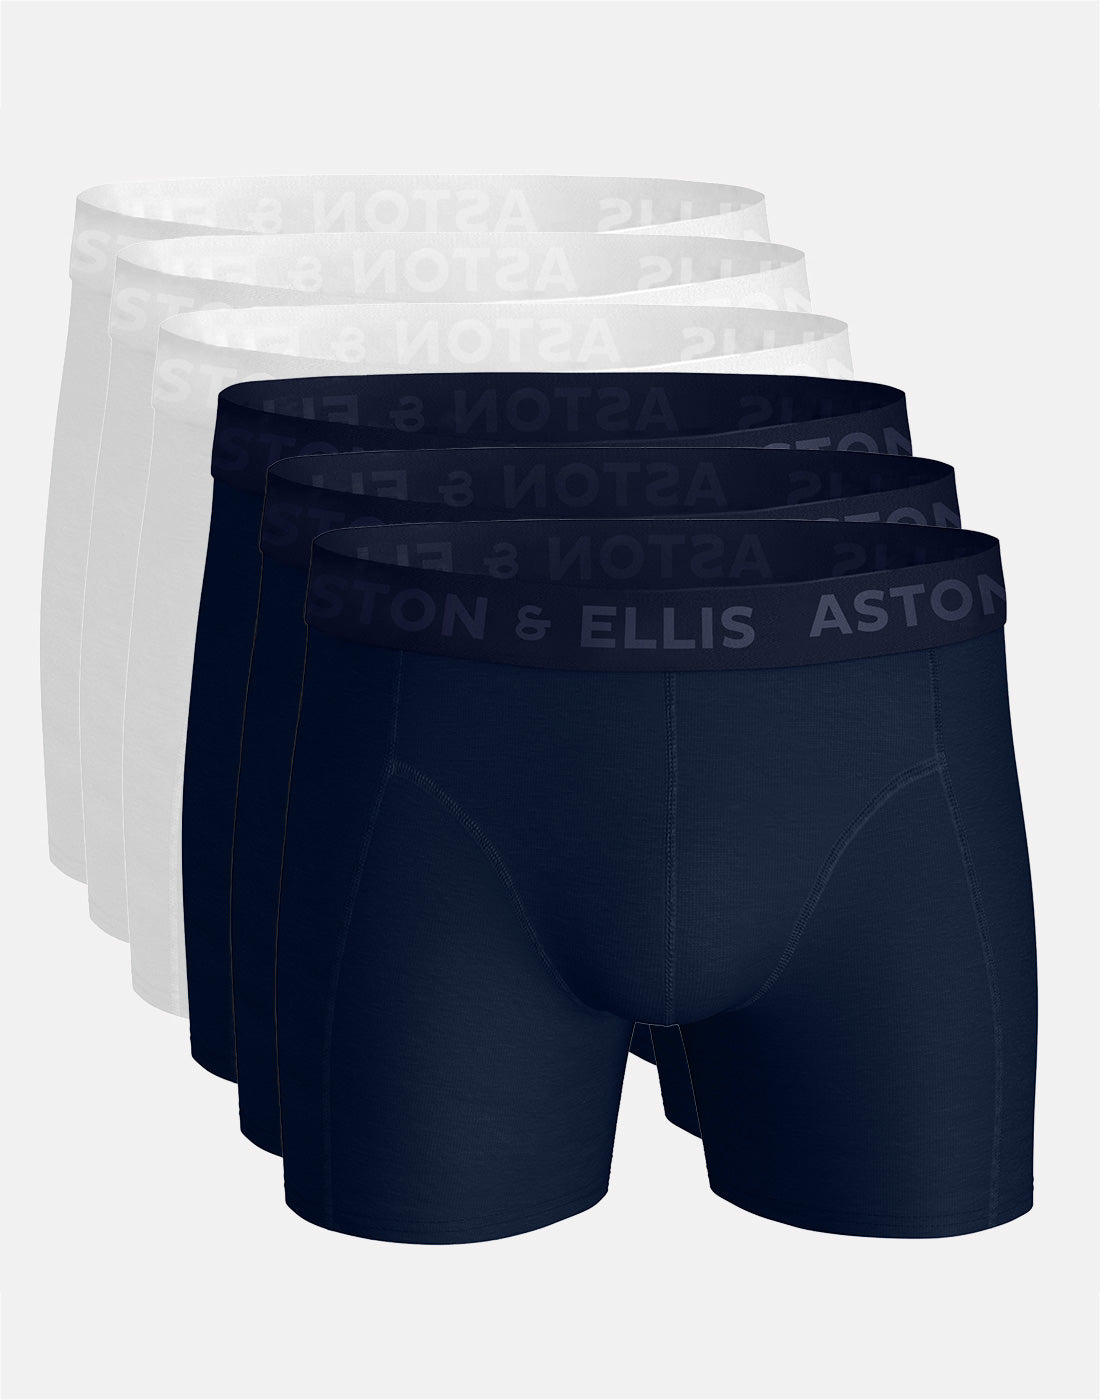 boxershorts-aston-ellis-navy-white-multi